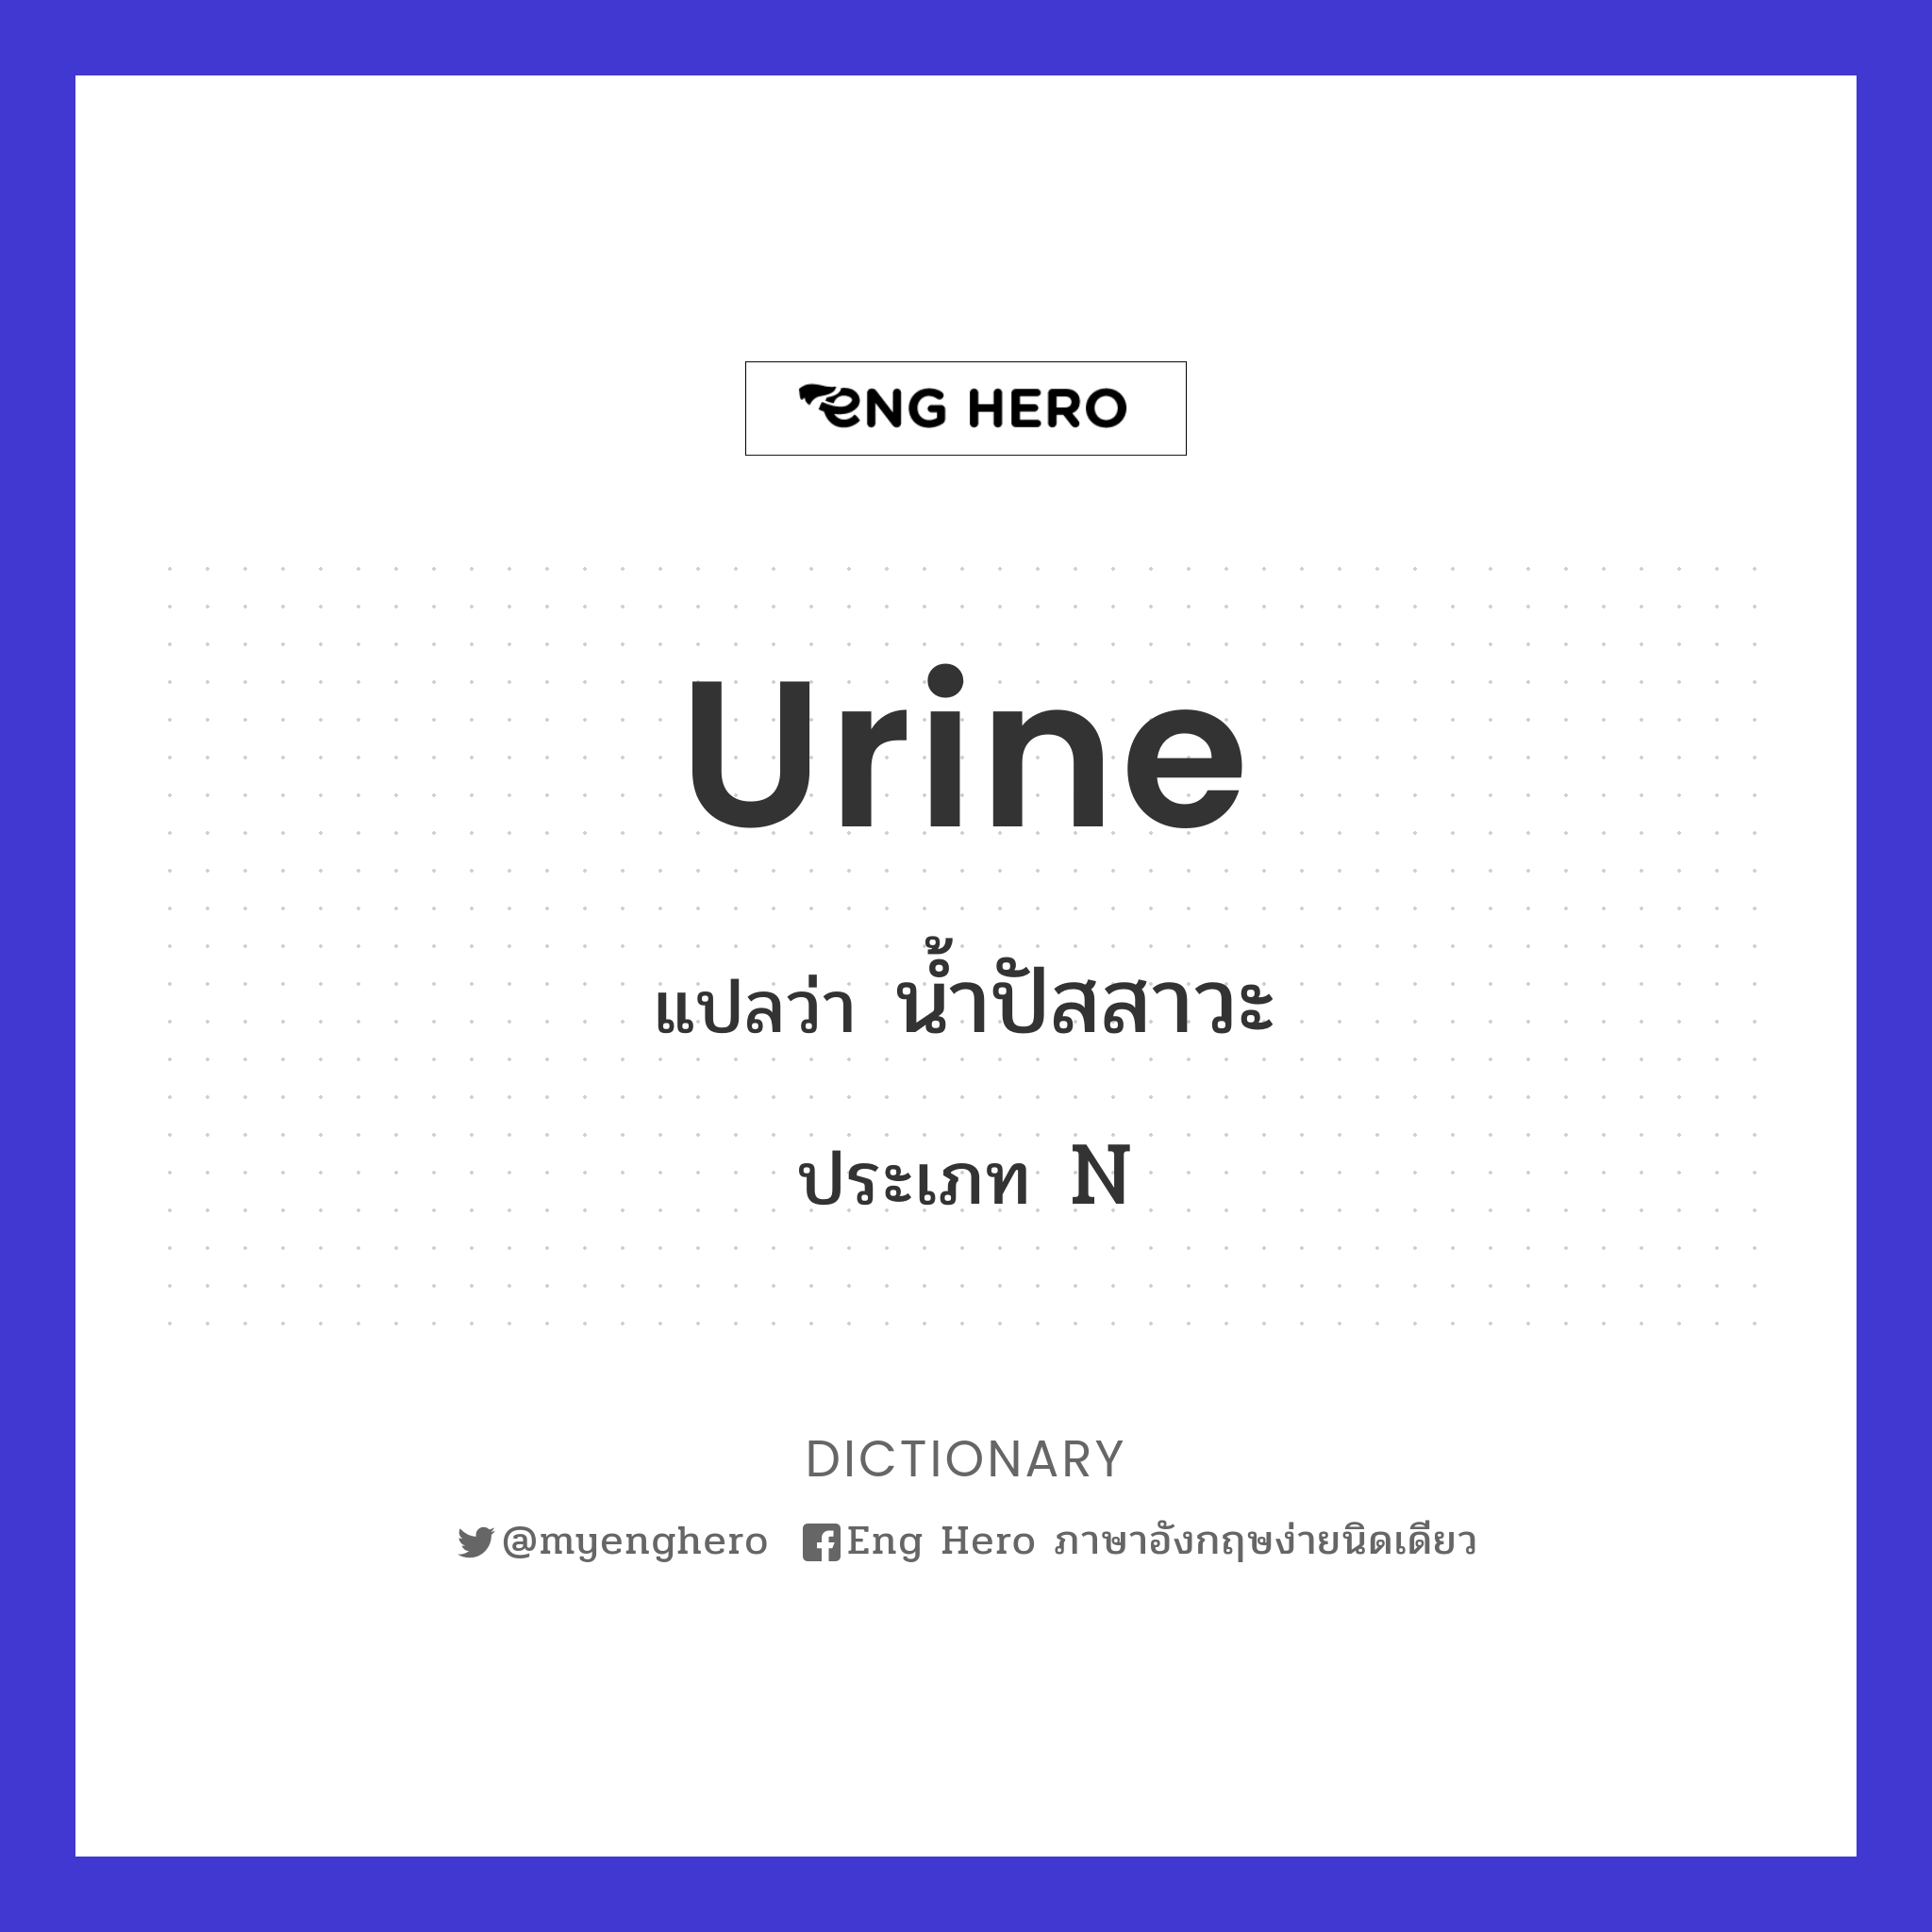 urine